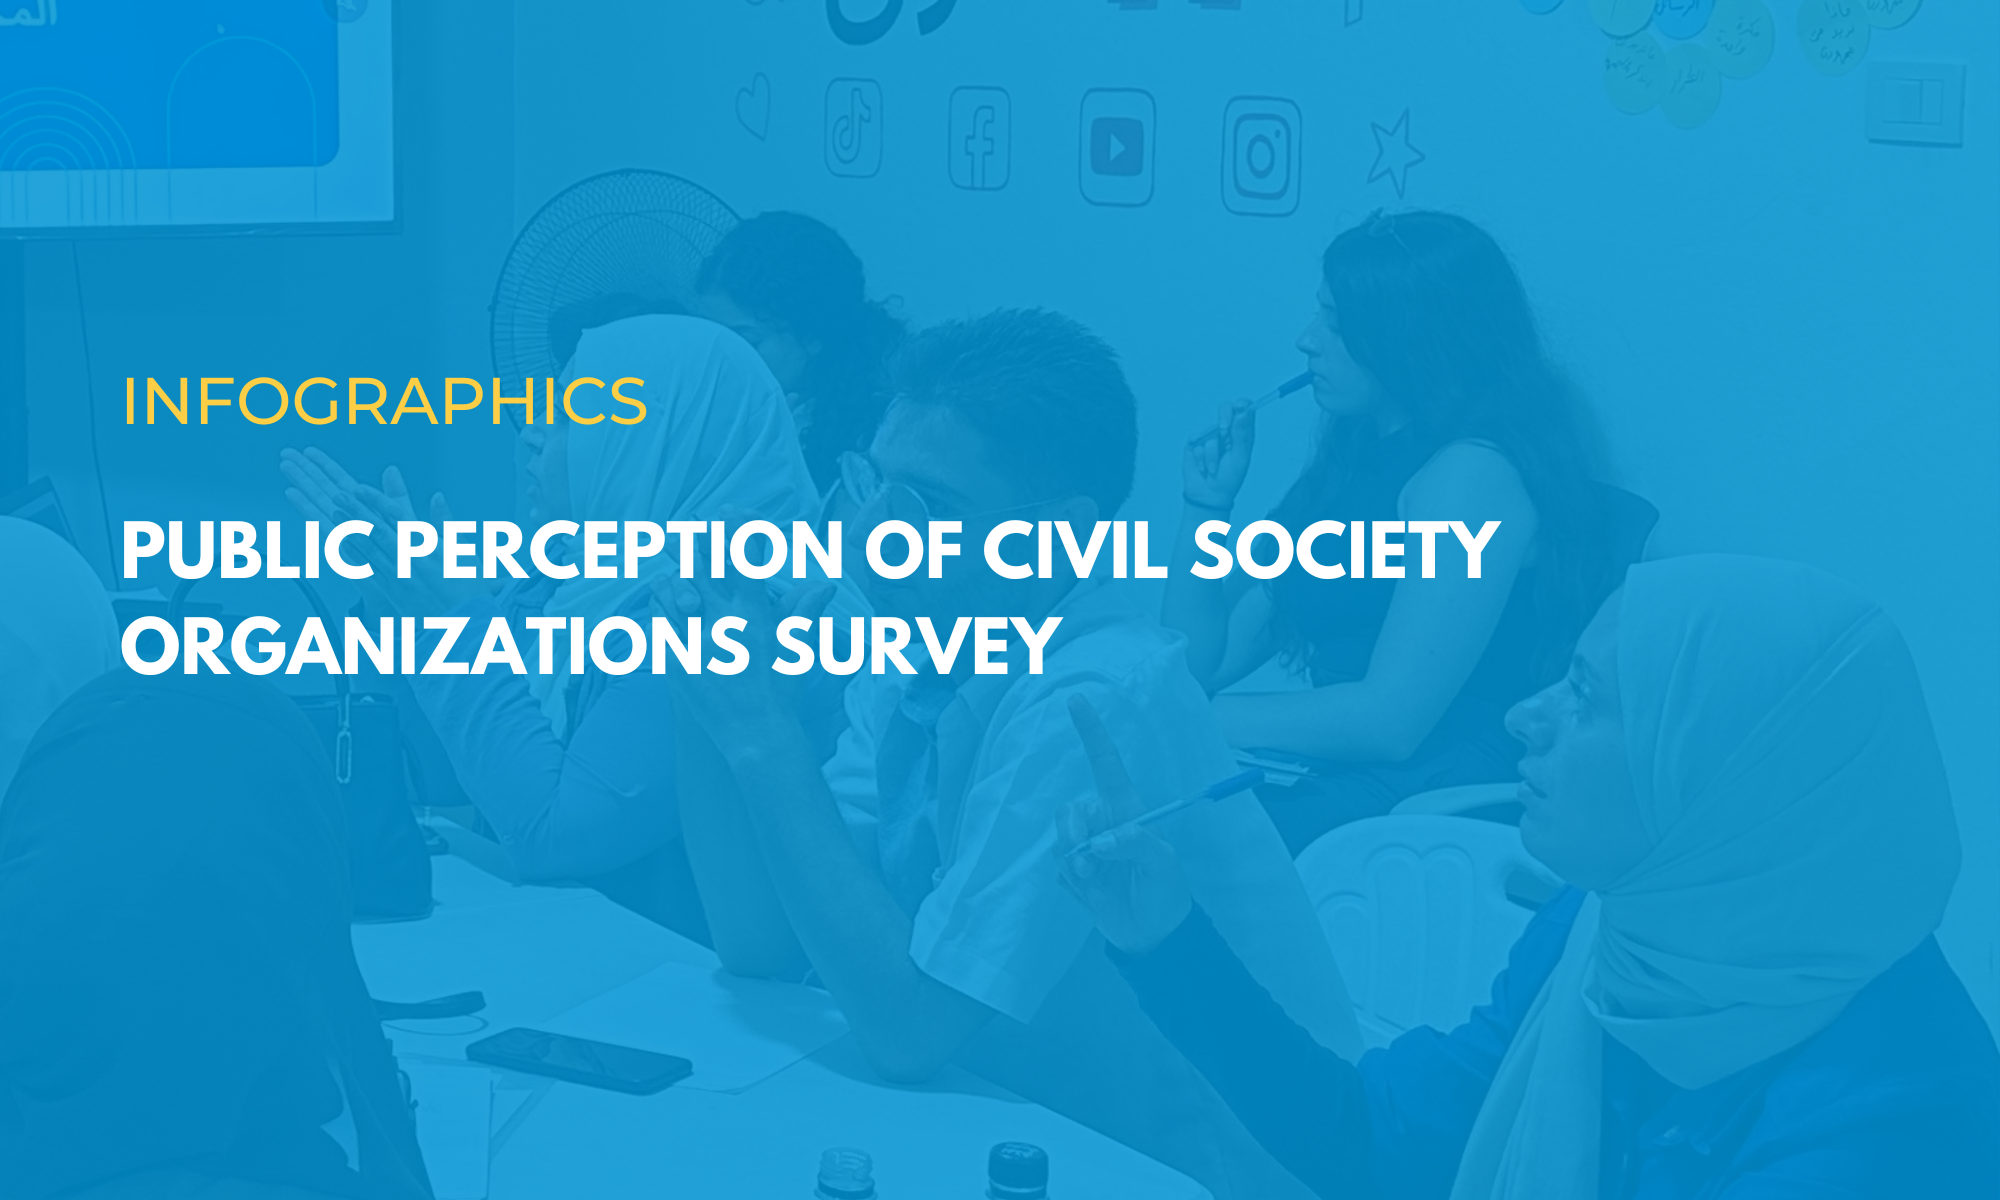 رسوم بيانية: دراسة استقصائية حول نظرة الرأي العام  لمنظمات المجتمع المدني